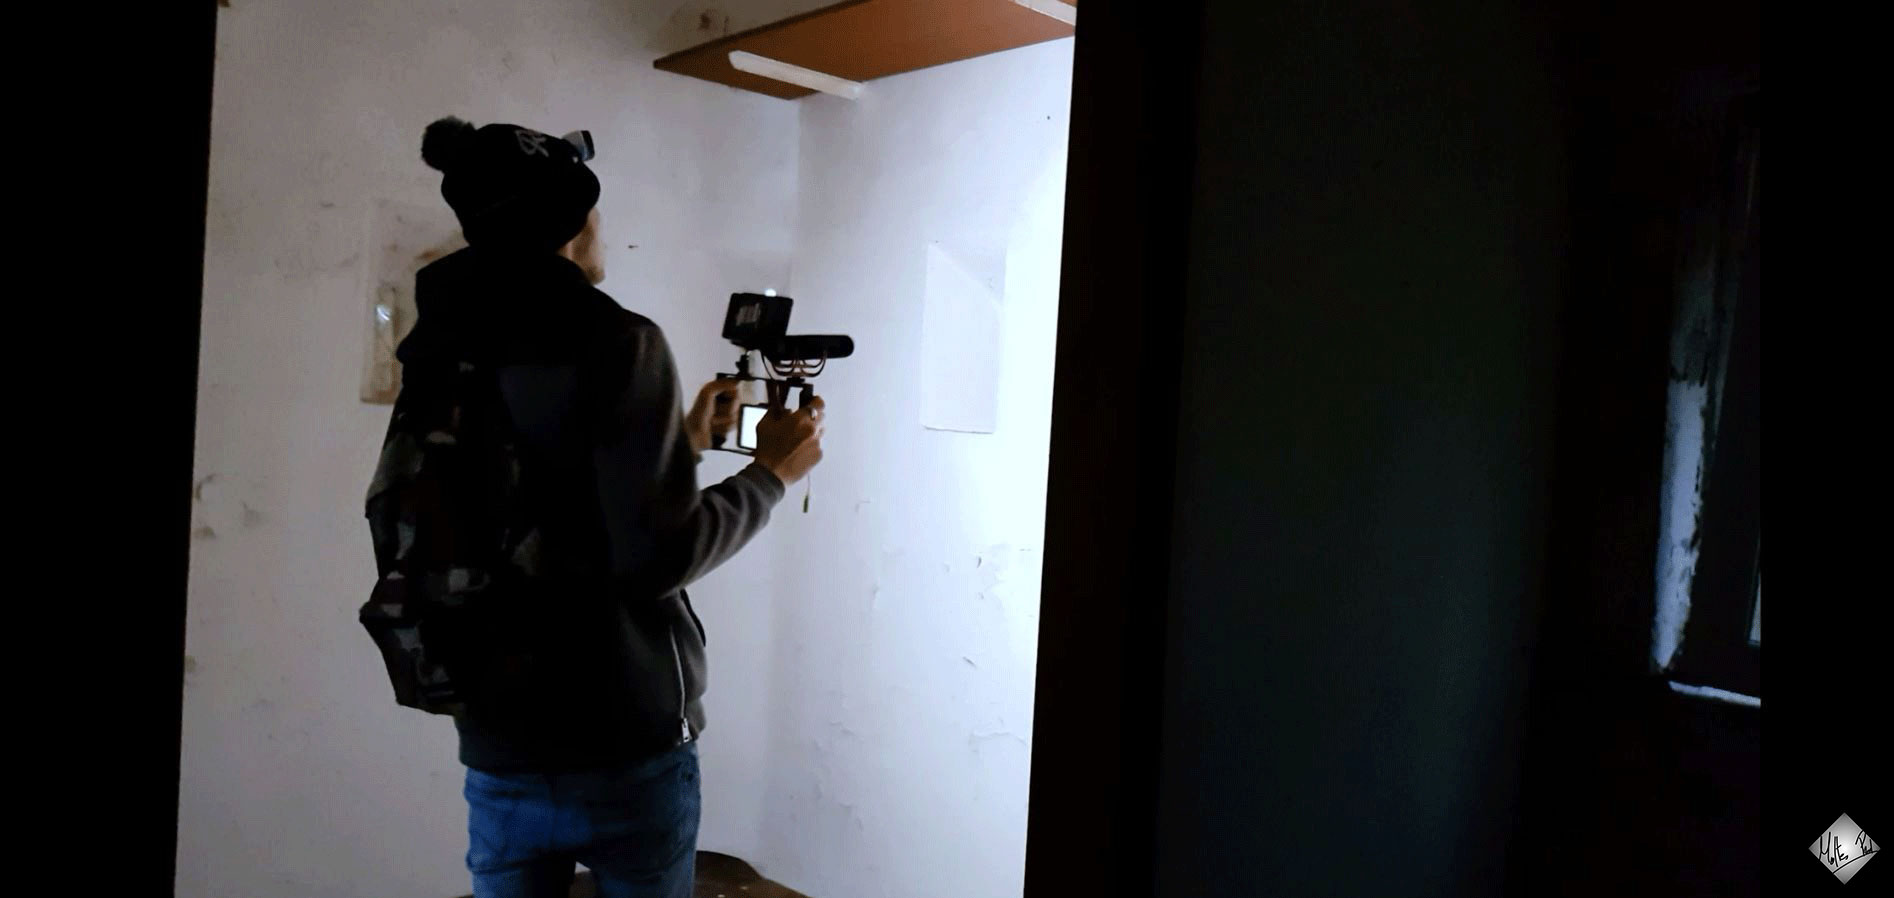 Session de tournage dans un bâtiment abandonné.